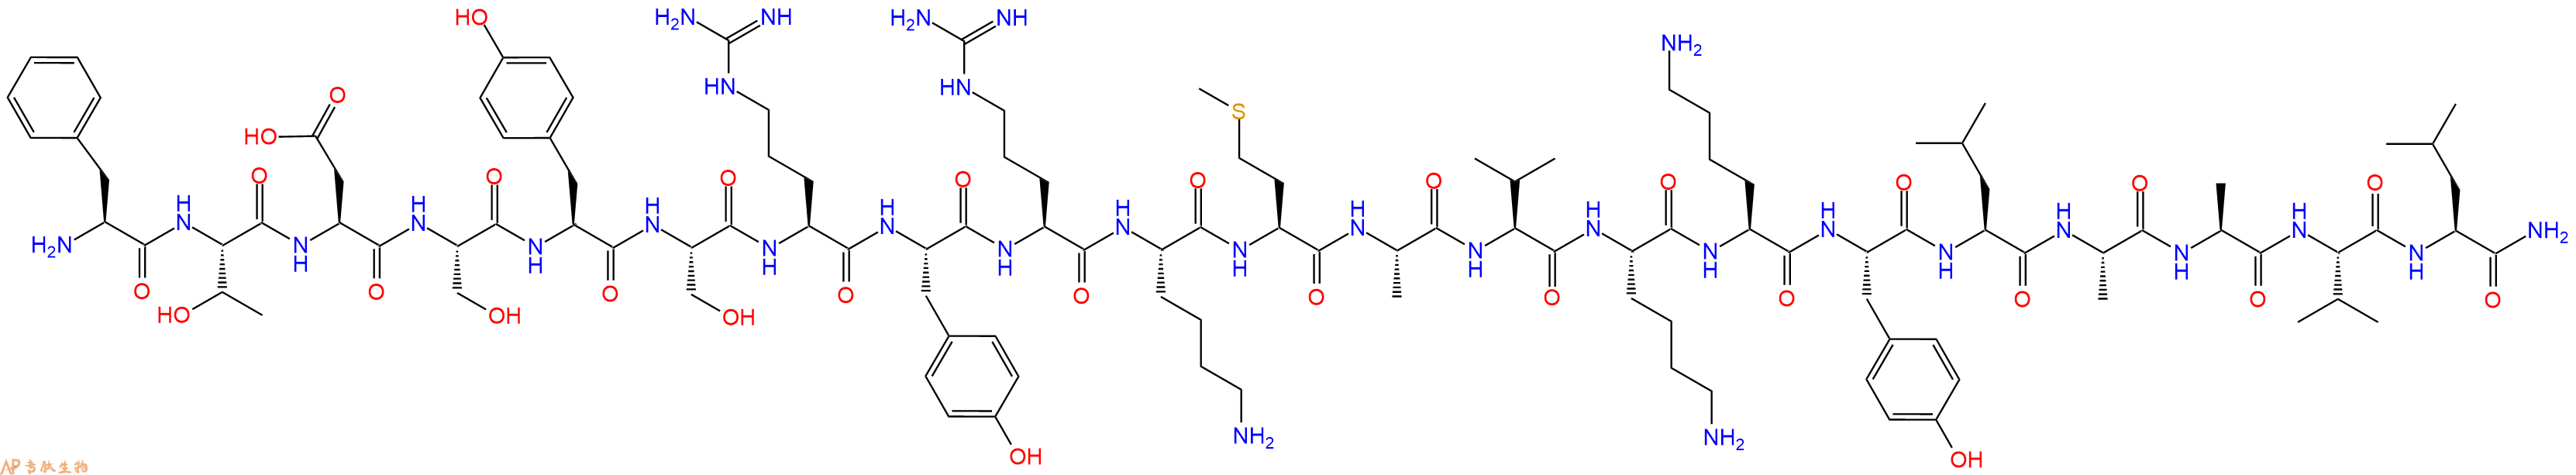 专肽生物产品[Des-Gln16]PACAP(6-27), human, ovine, rat